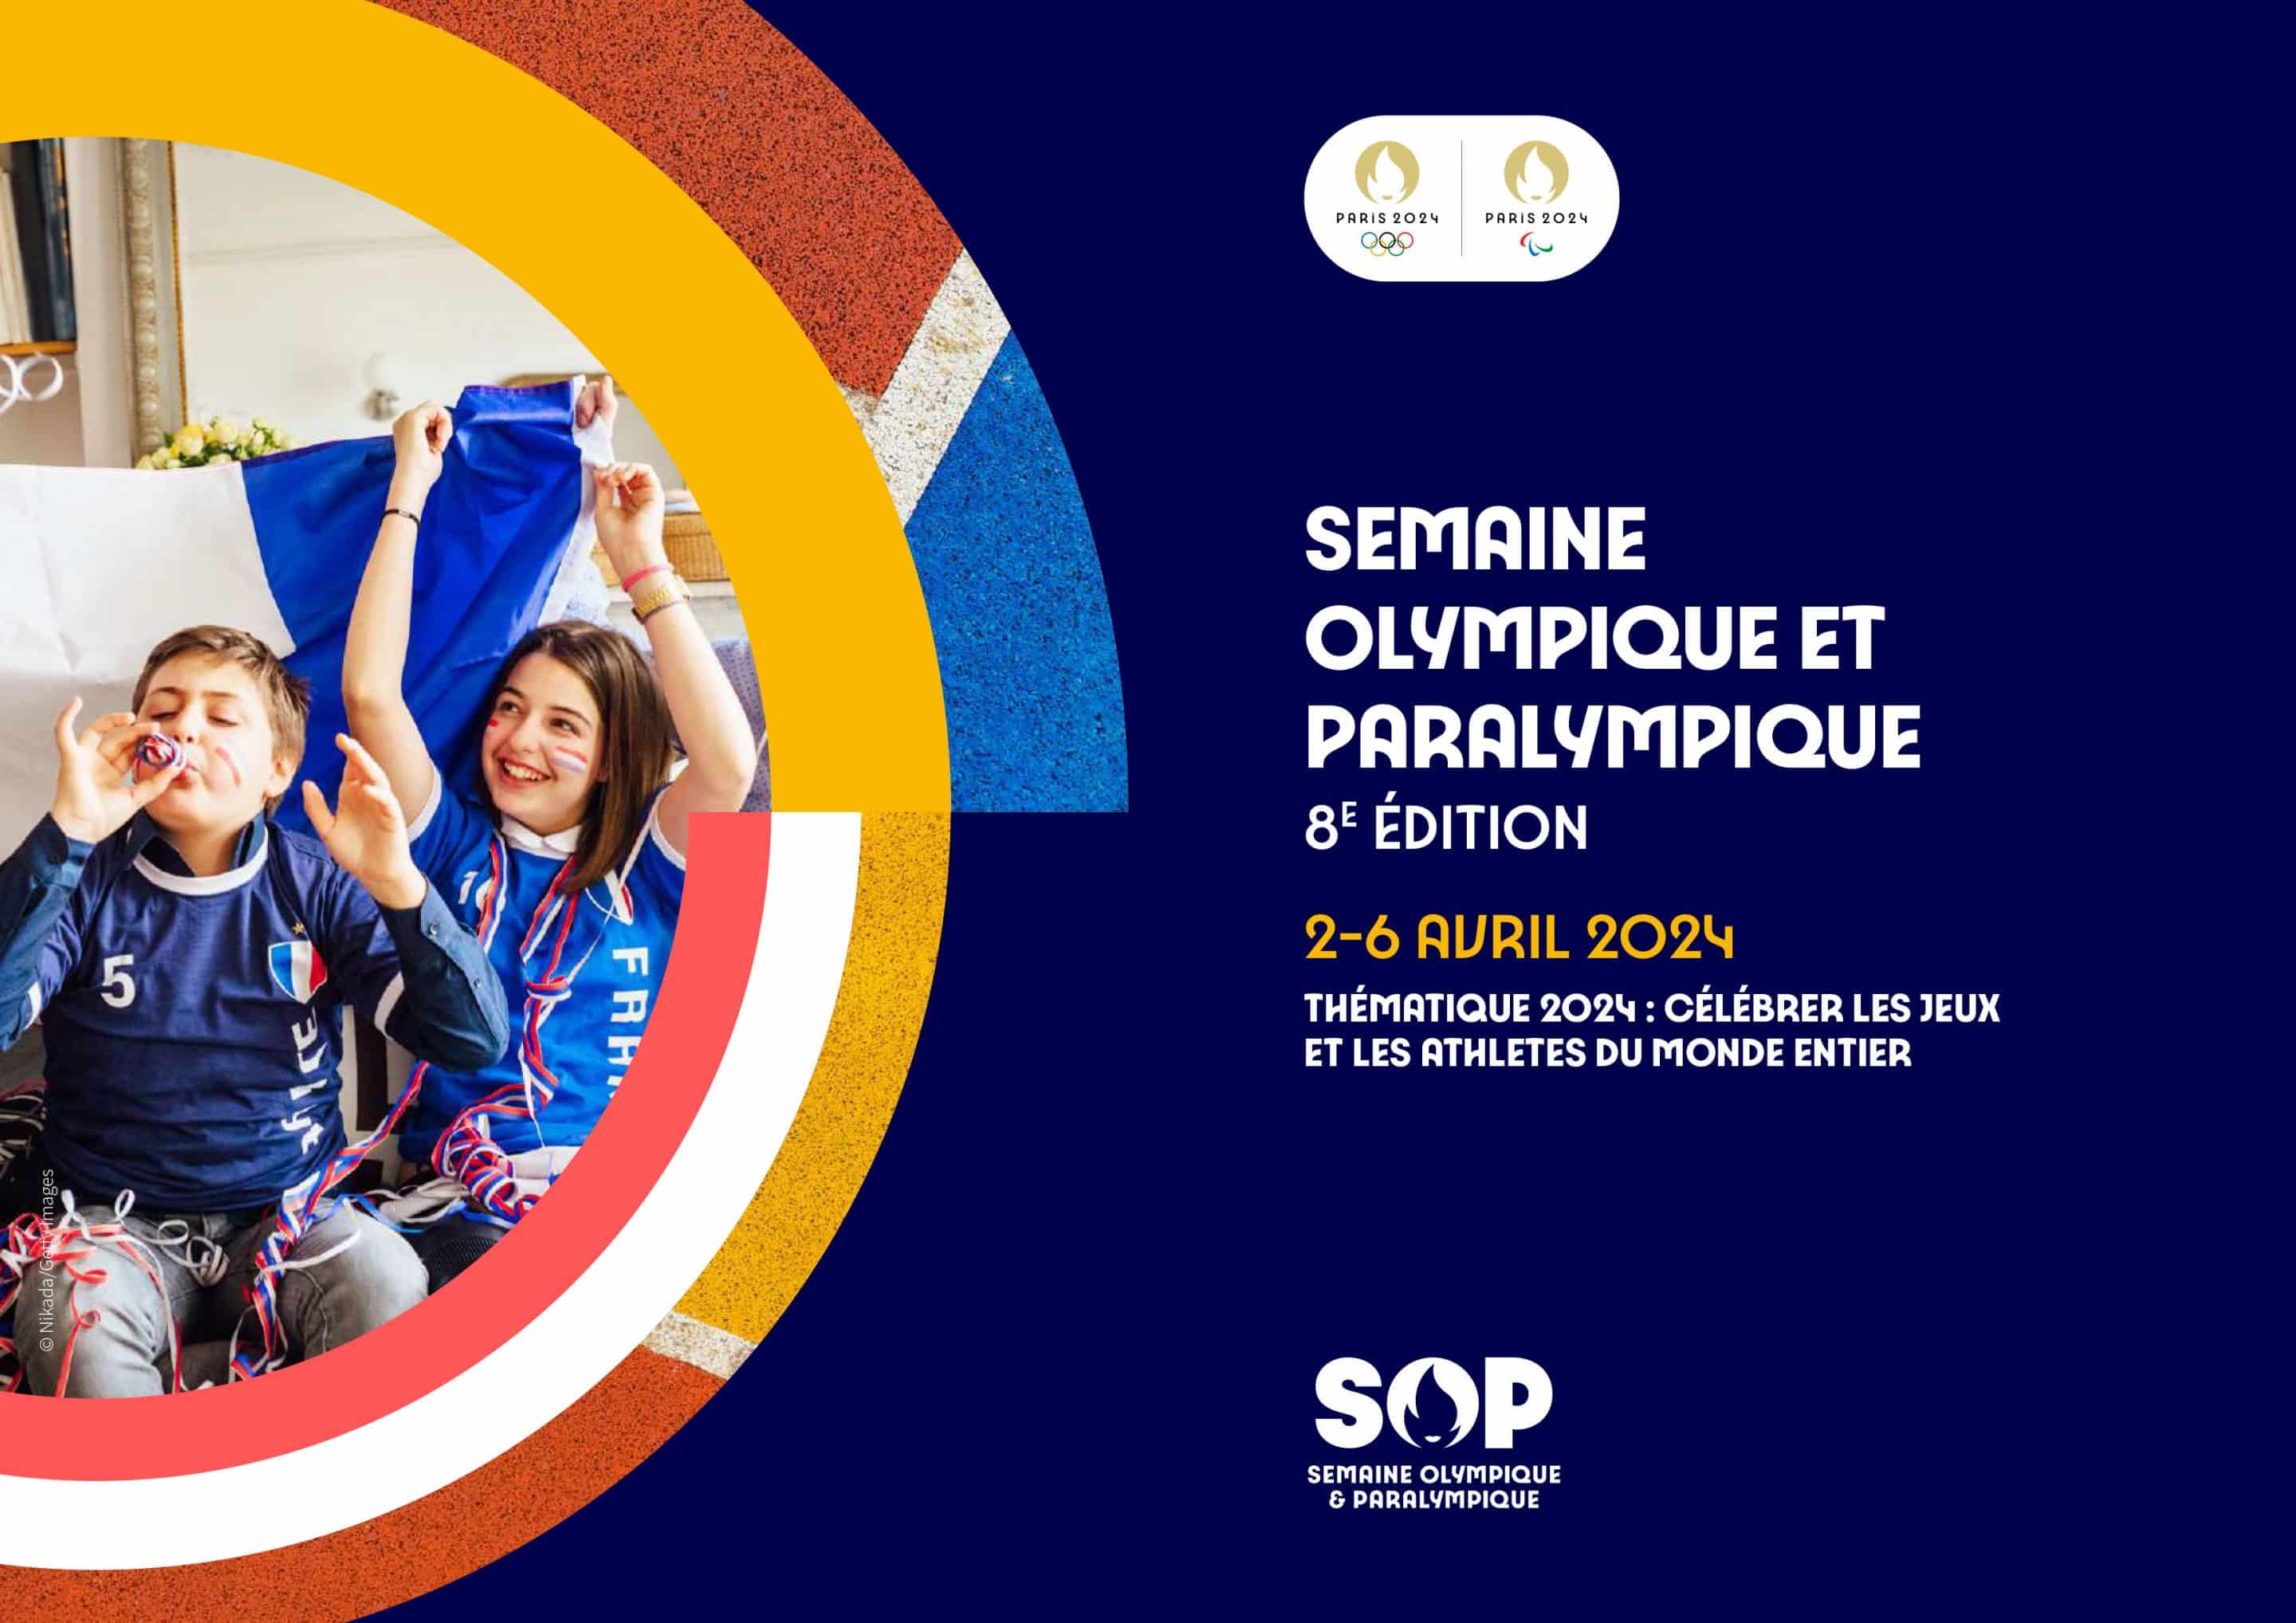 Semaine Olympique et Paralympique (SOP) 2024 : déposez votre